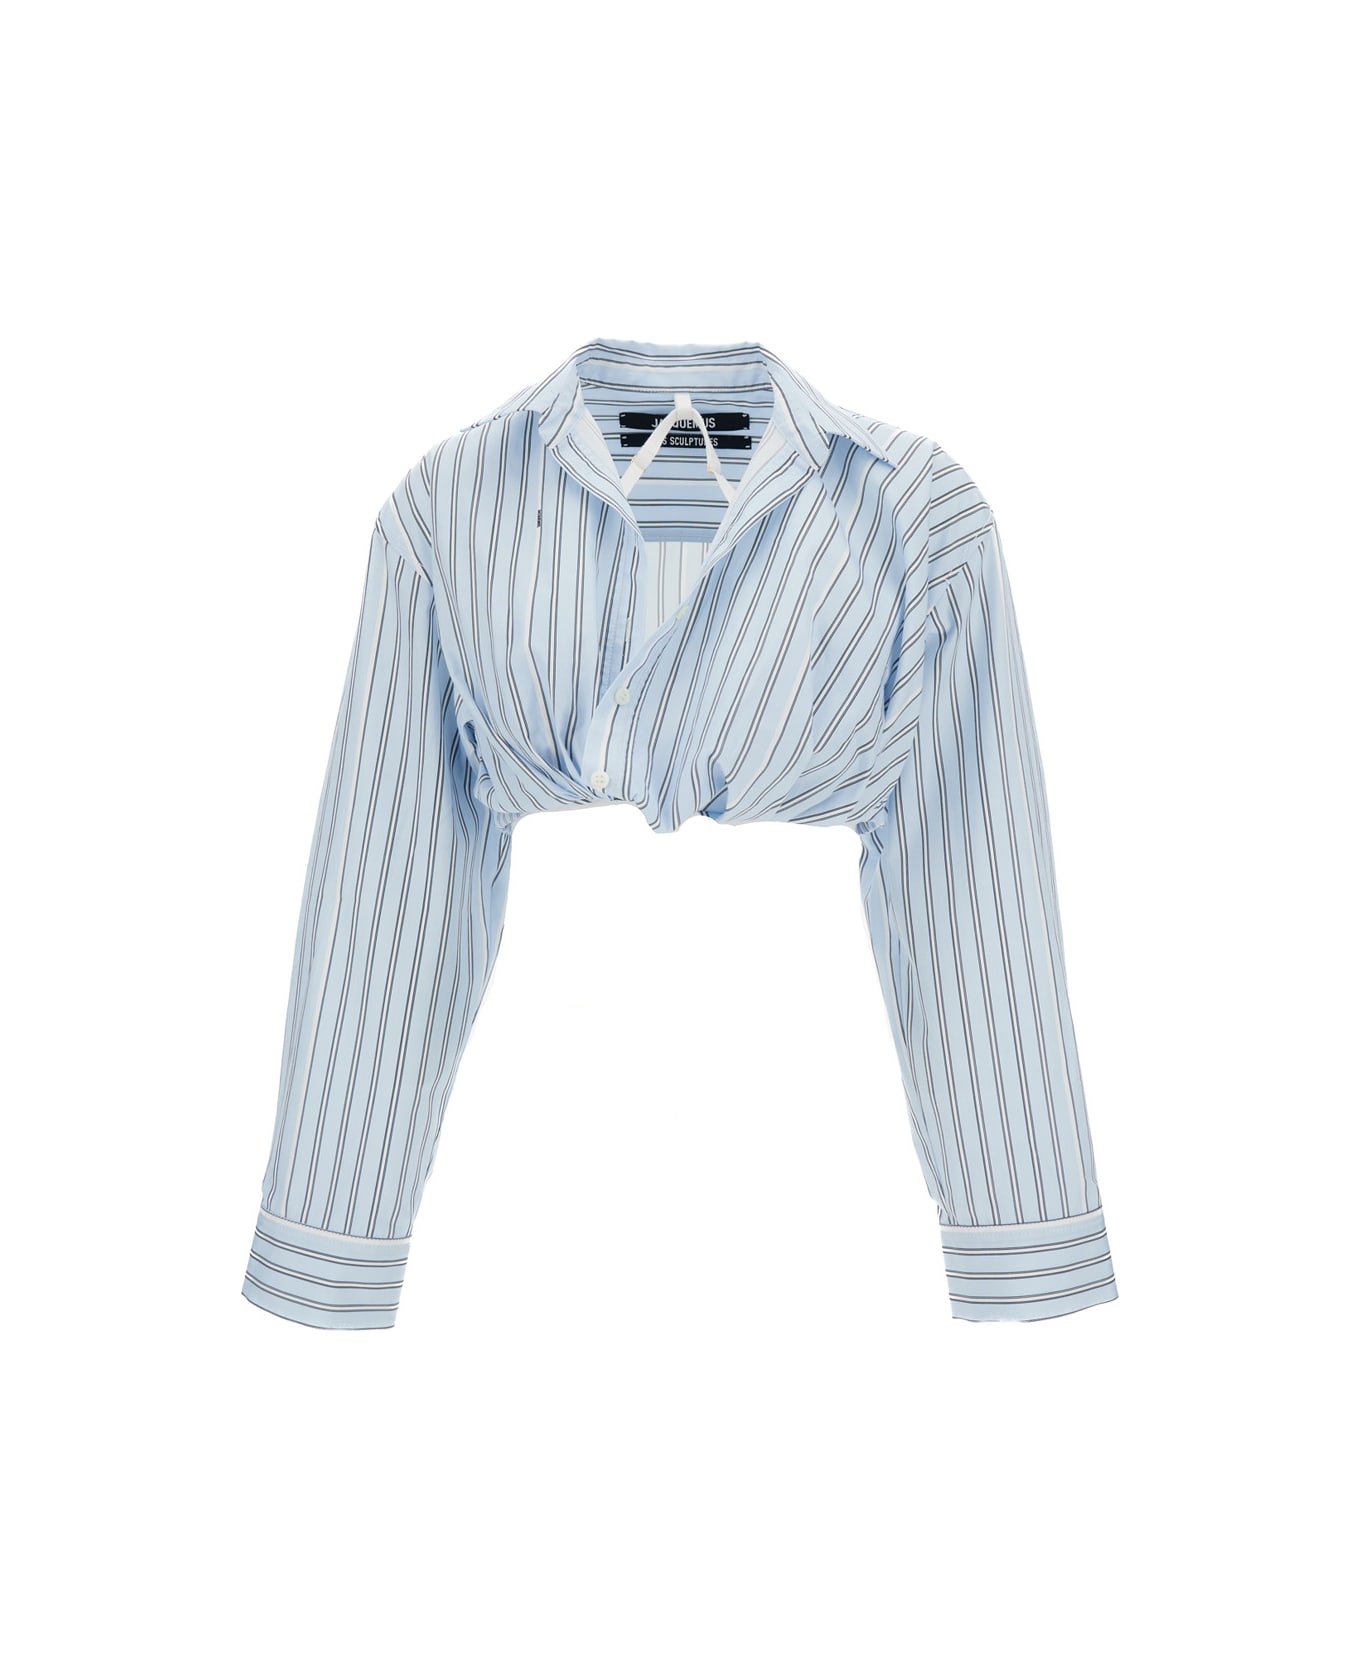 Jacquemus La Chemise Bahia Shirt - Print blue stripe シャツ